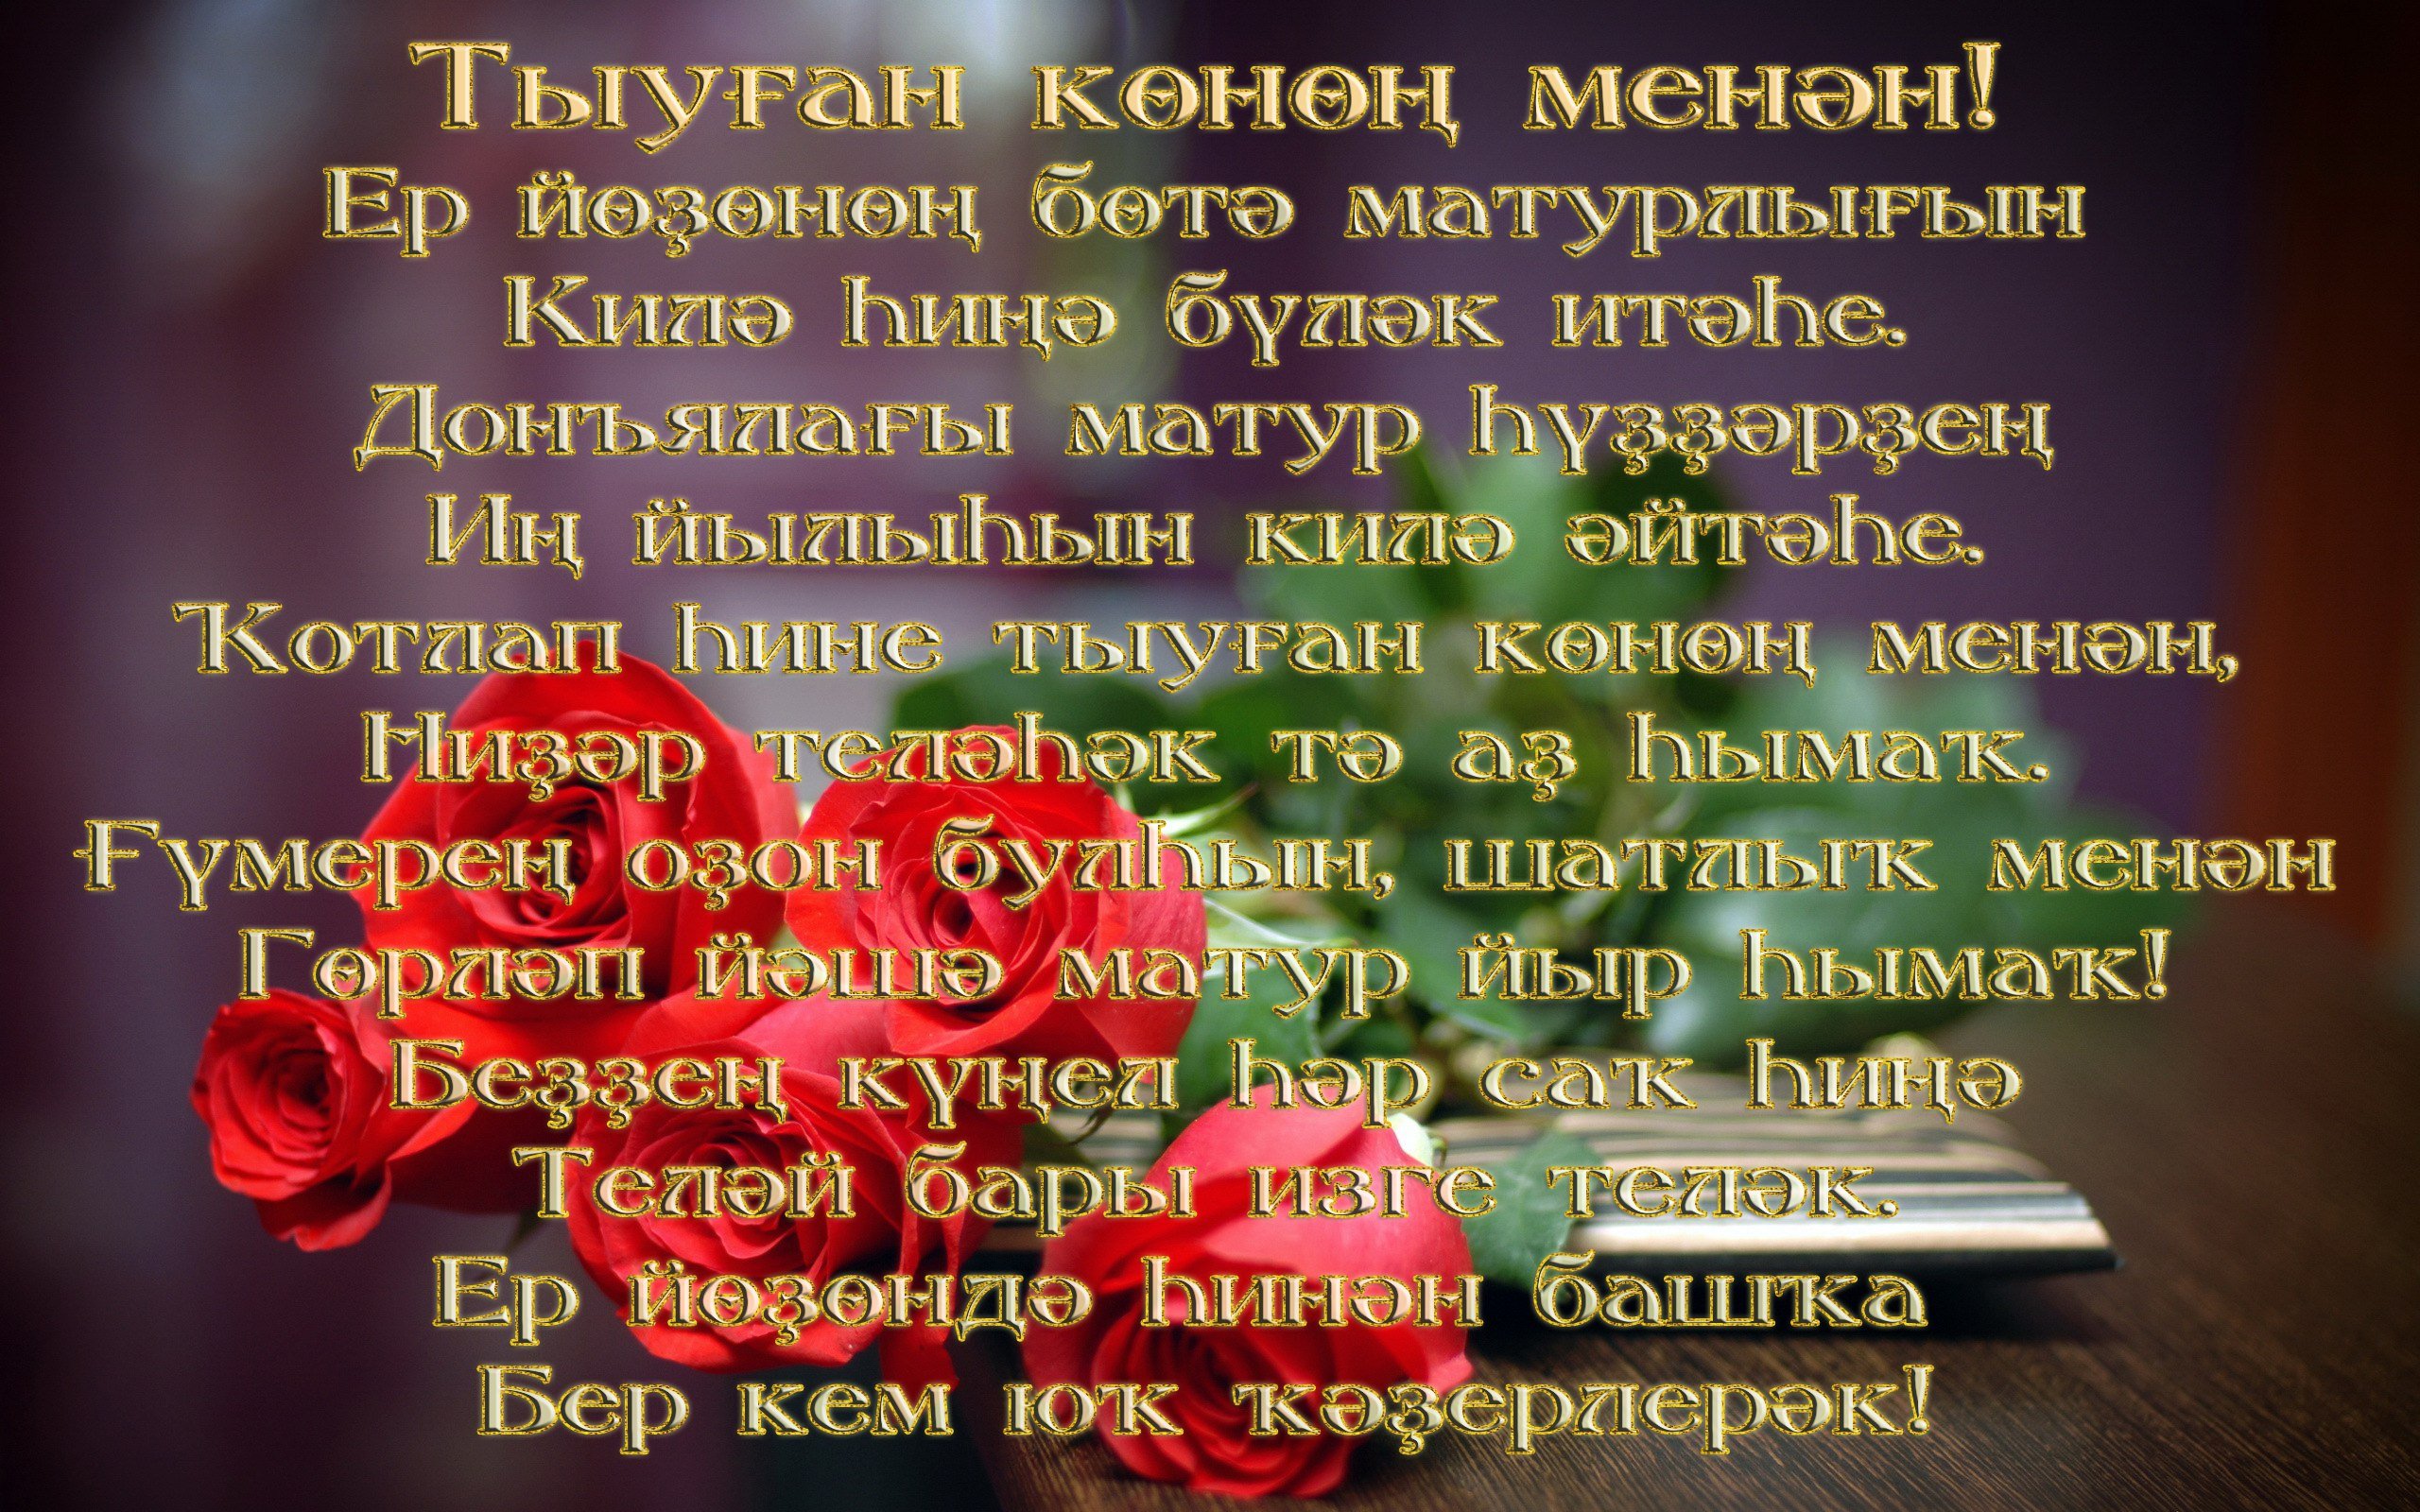 Татарский поздравление с днем рождения брата. Поздравления на башкирском. Поздравления с днём рождения на башкирском языке. Поздравления башкирском языке женщине. Поздравление с юбилеем на башкирском.